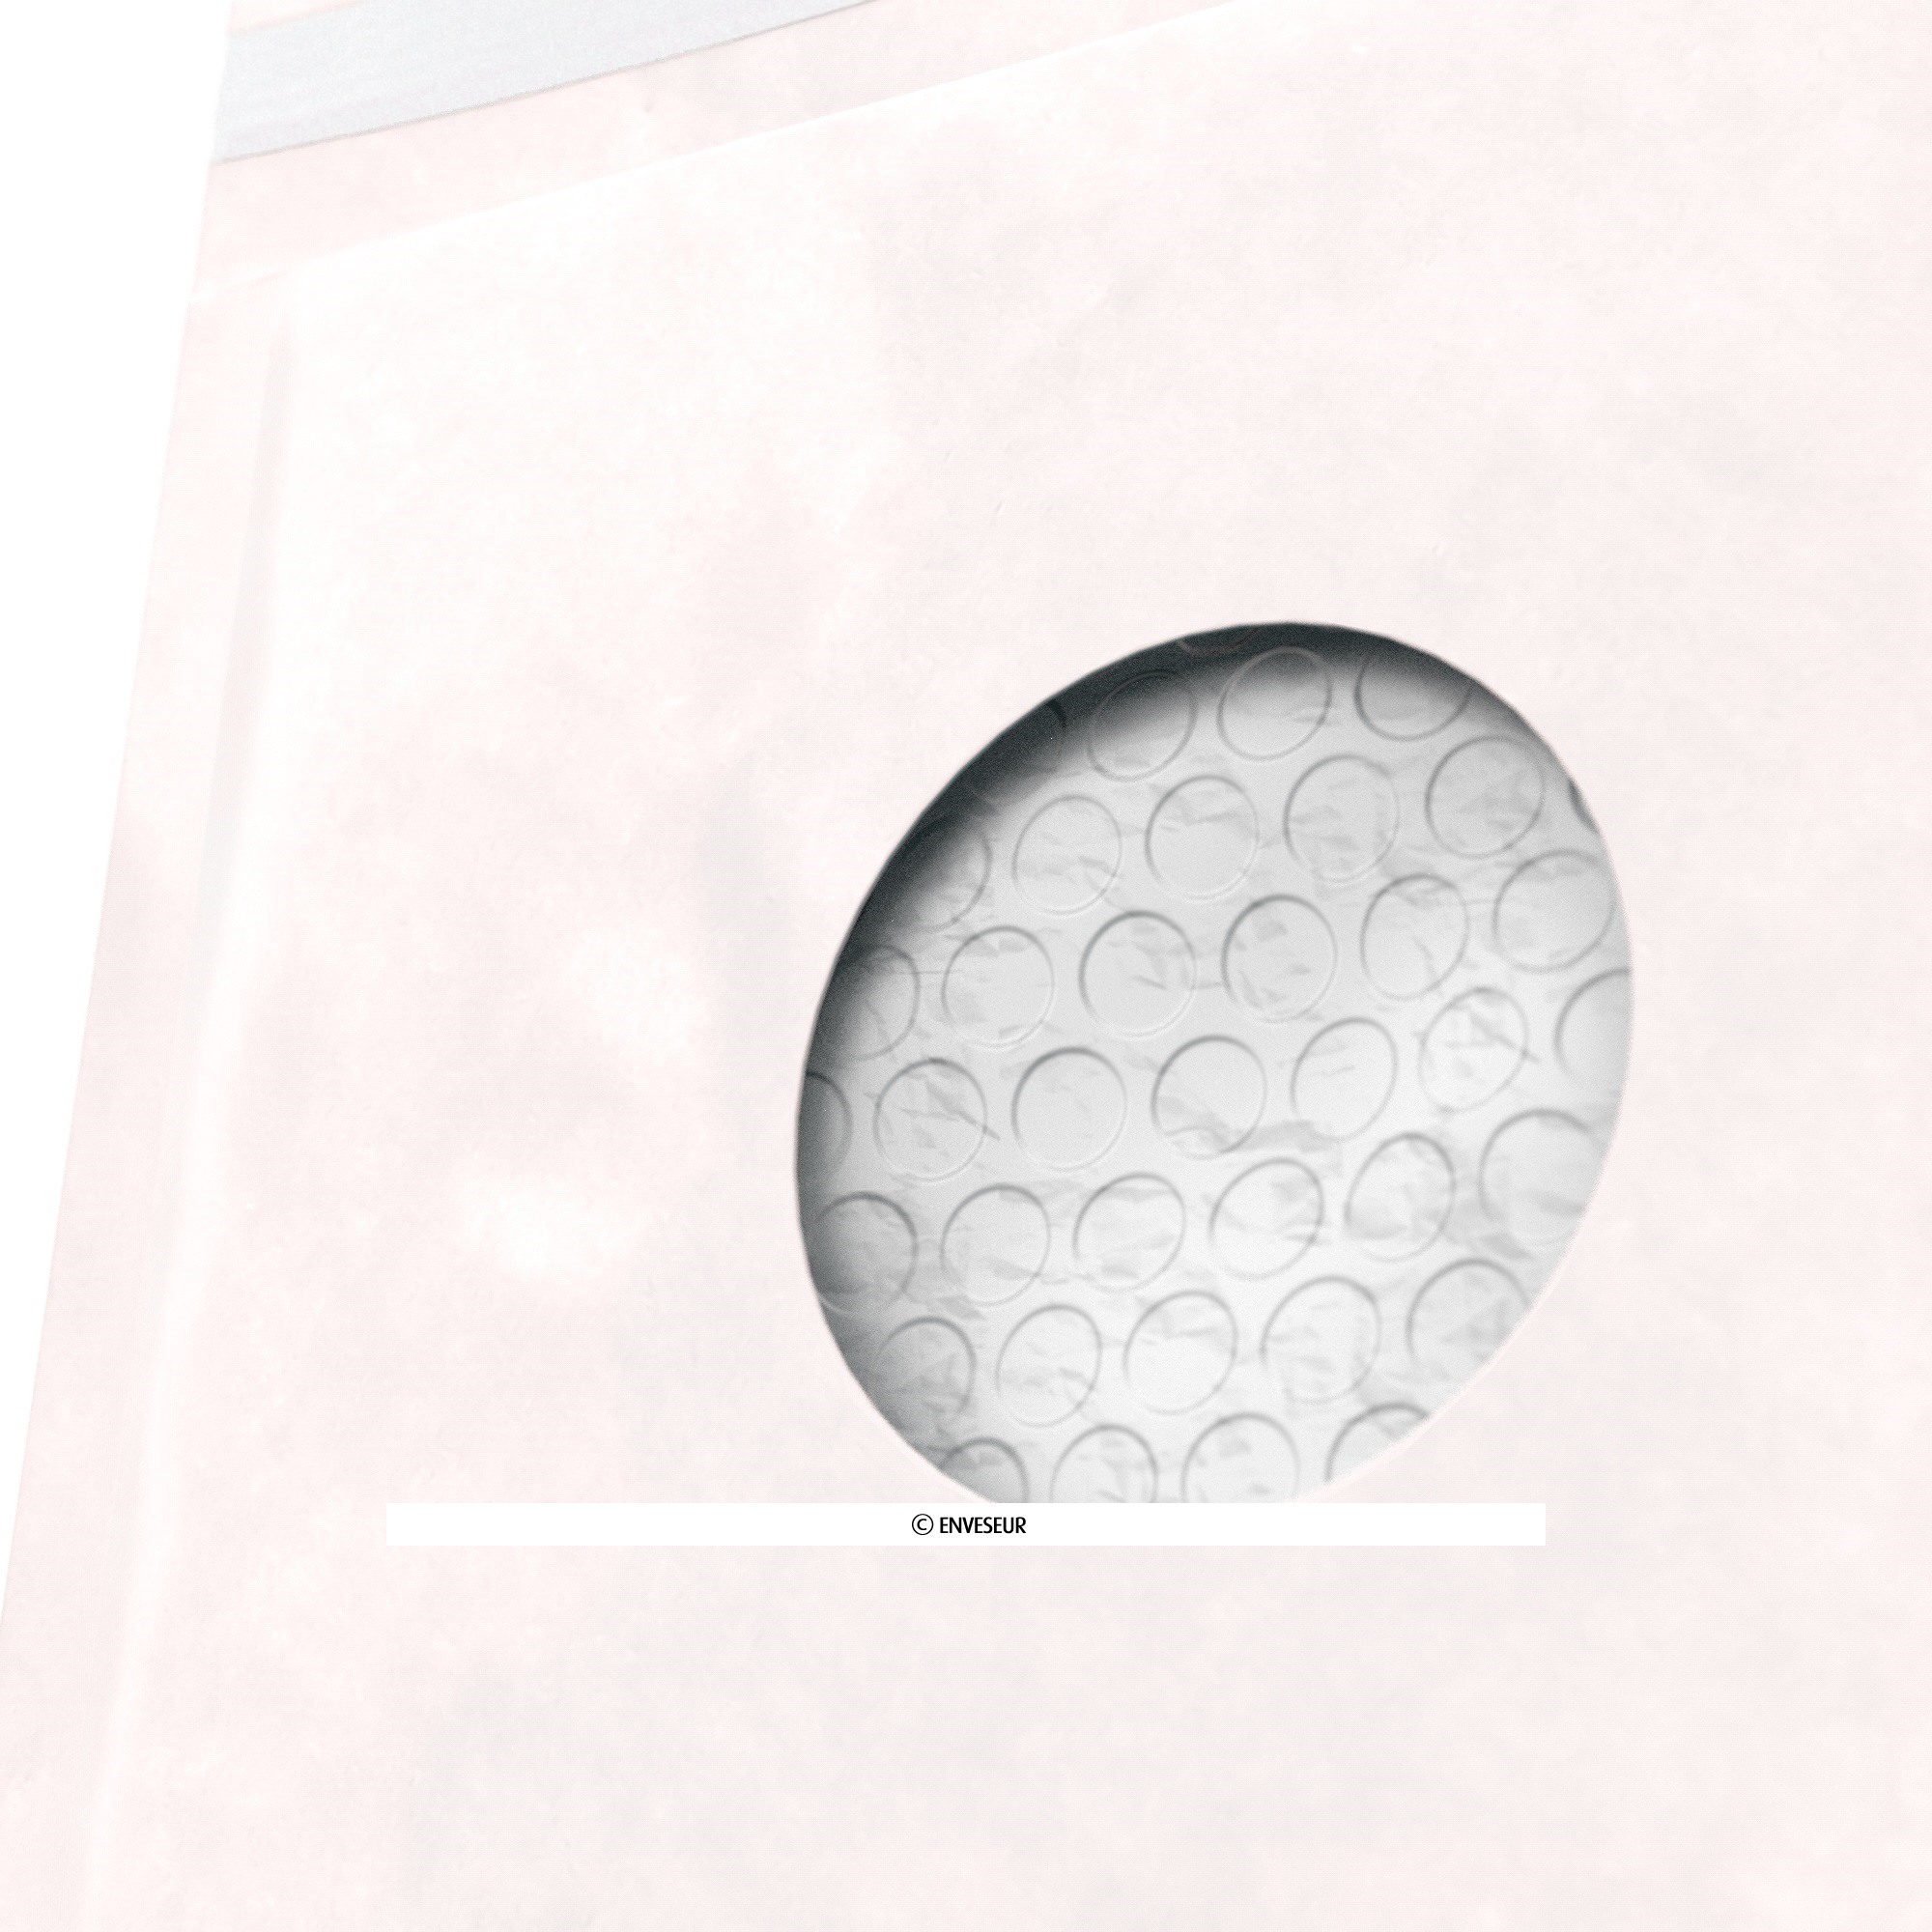 AIRPRO Boîte de 100 pochettes à bulles d'air en Kraft Blanc, fermeture auto- adhésive, Format 22 x 26,5 cm